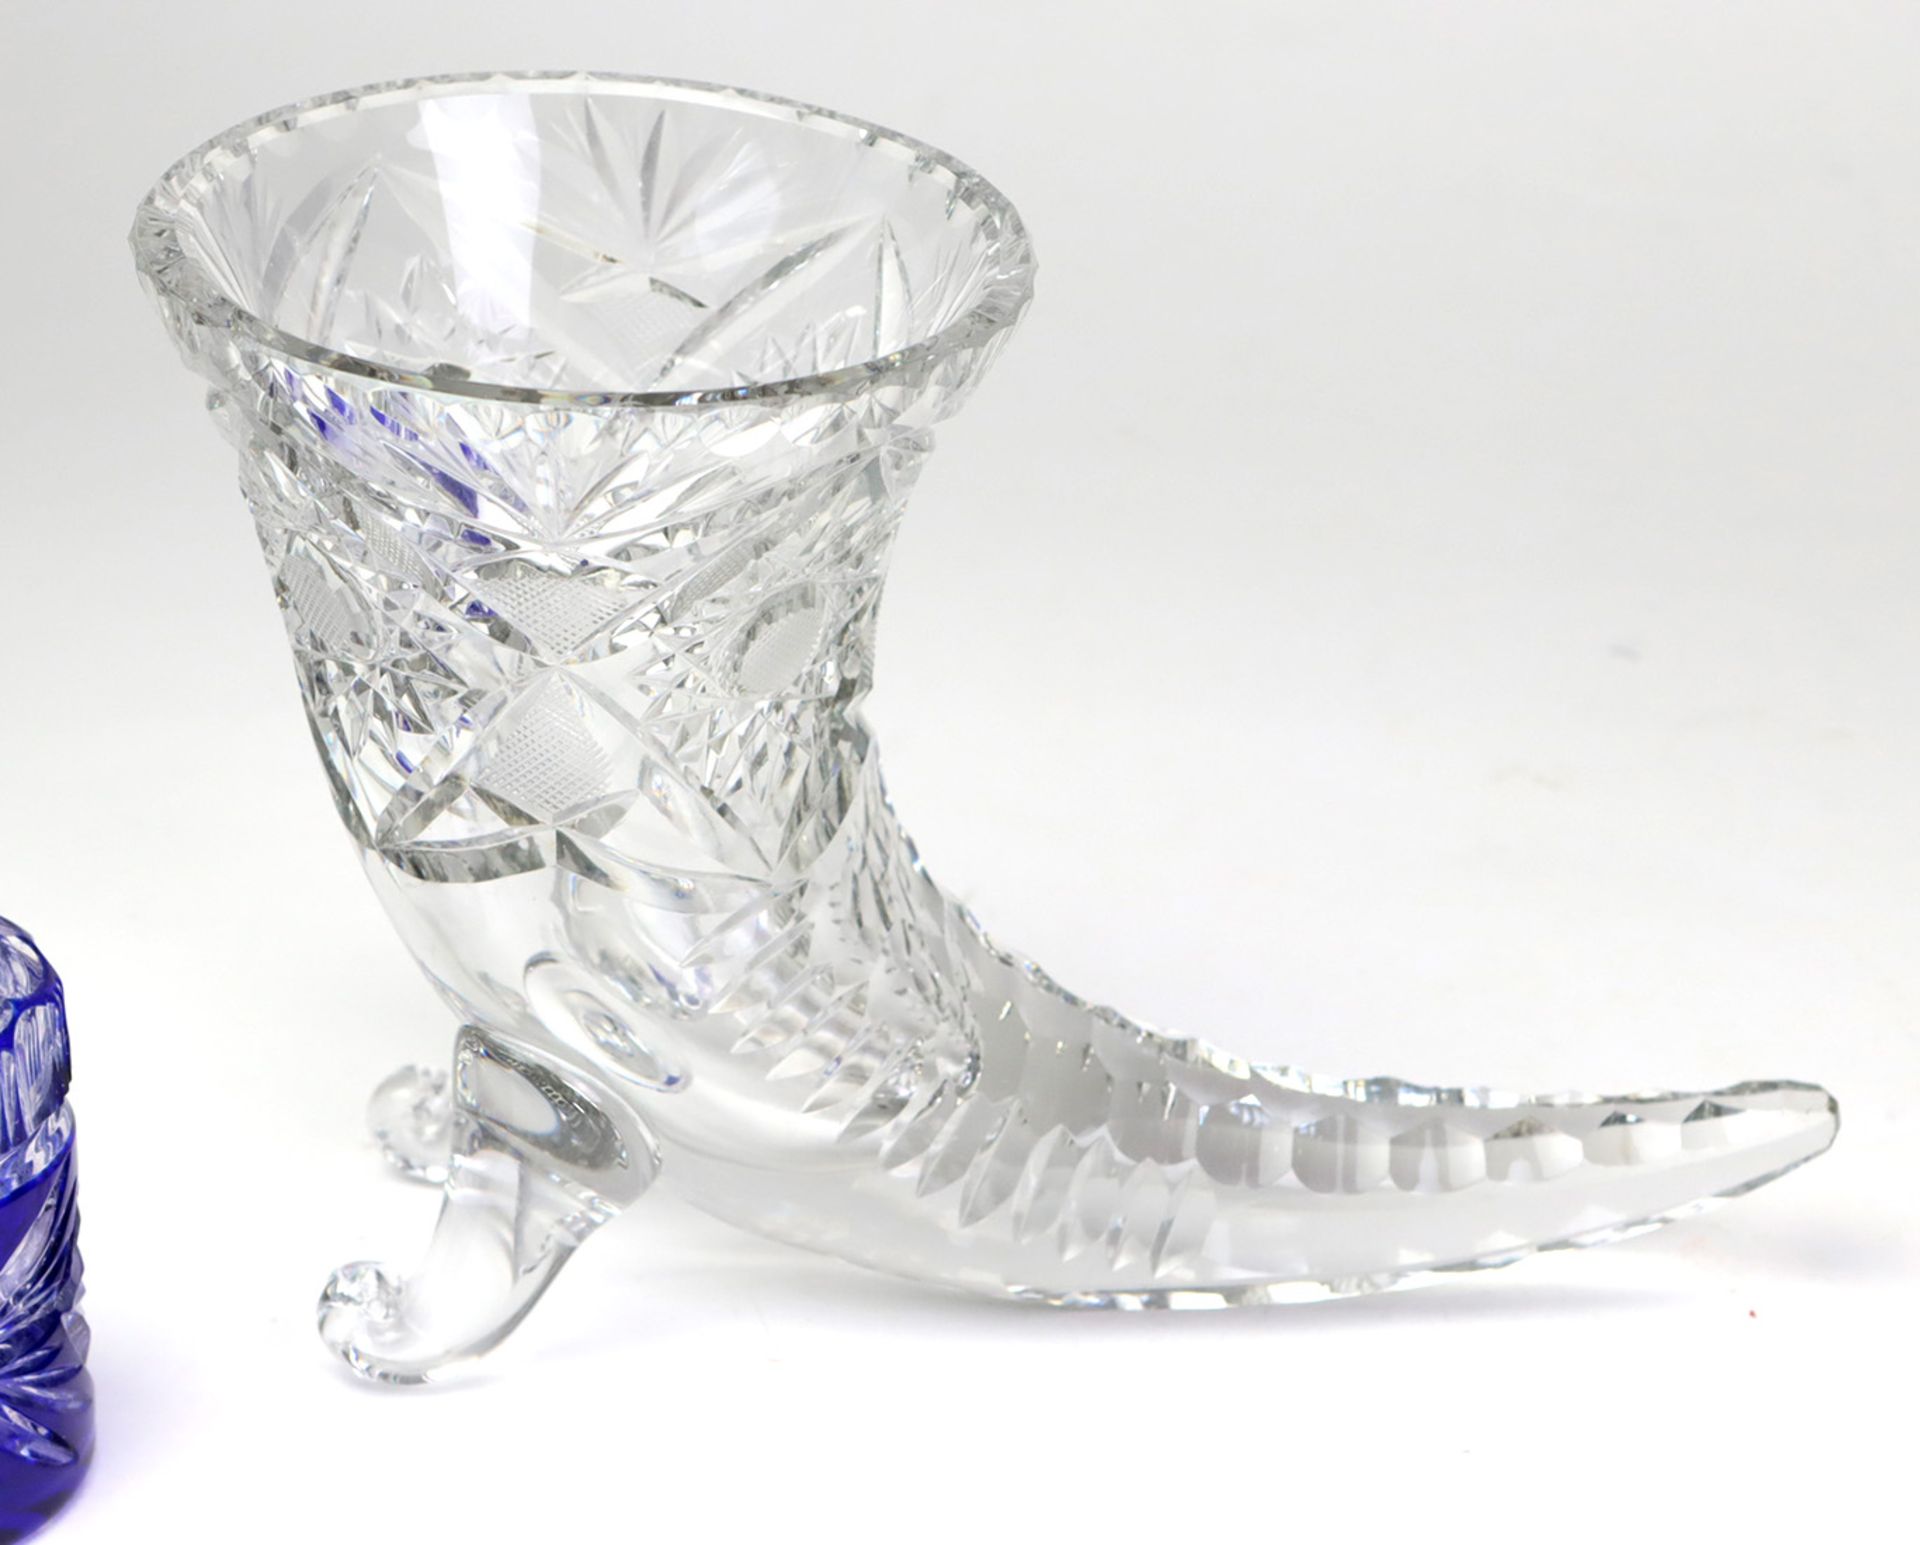 3 Kristallteilefarbloses Kristallglas mundgeblasen u. von Hand beschliffen, dabei Vase in Hornform - Bild 2 aus 2